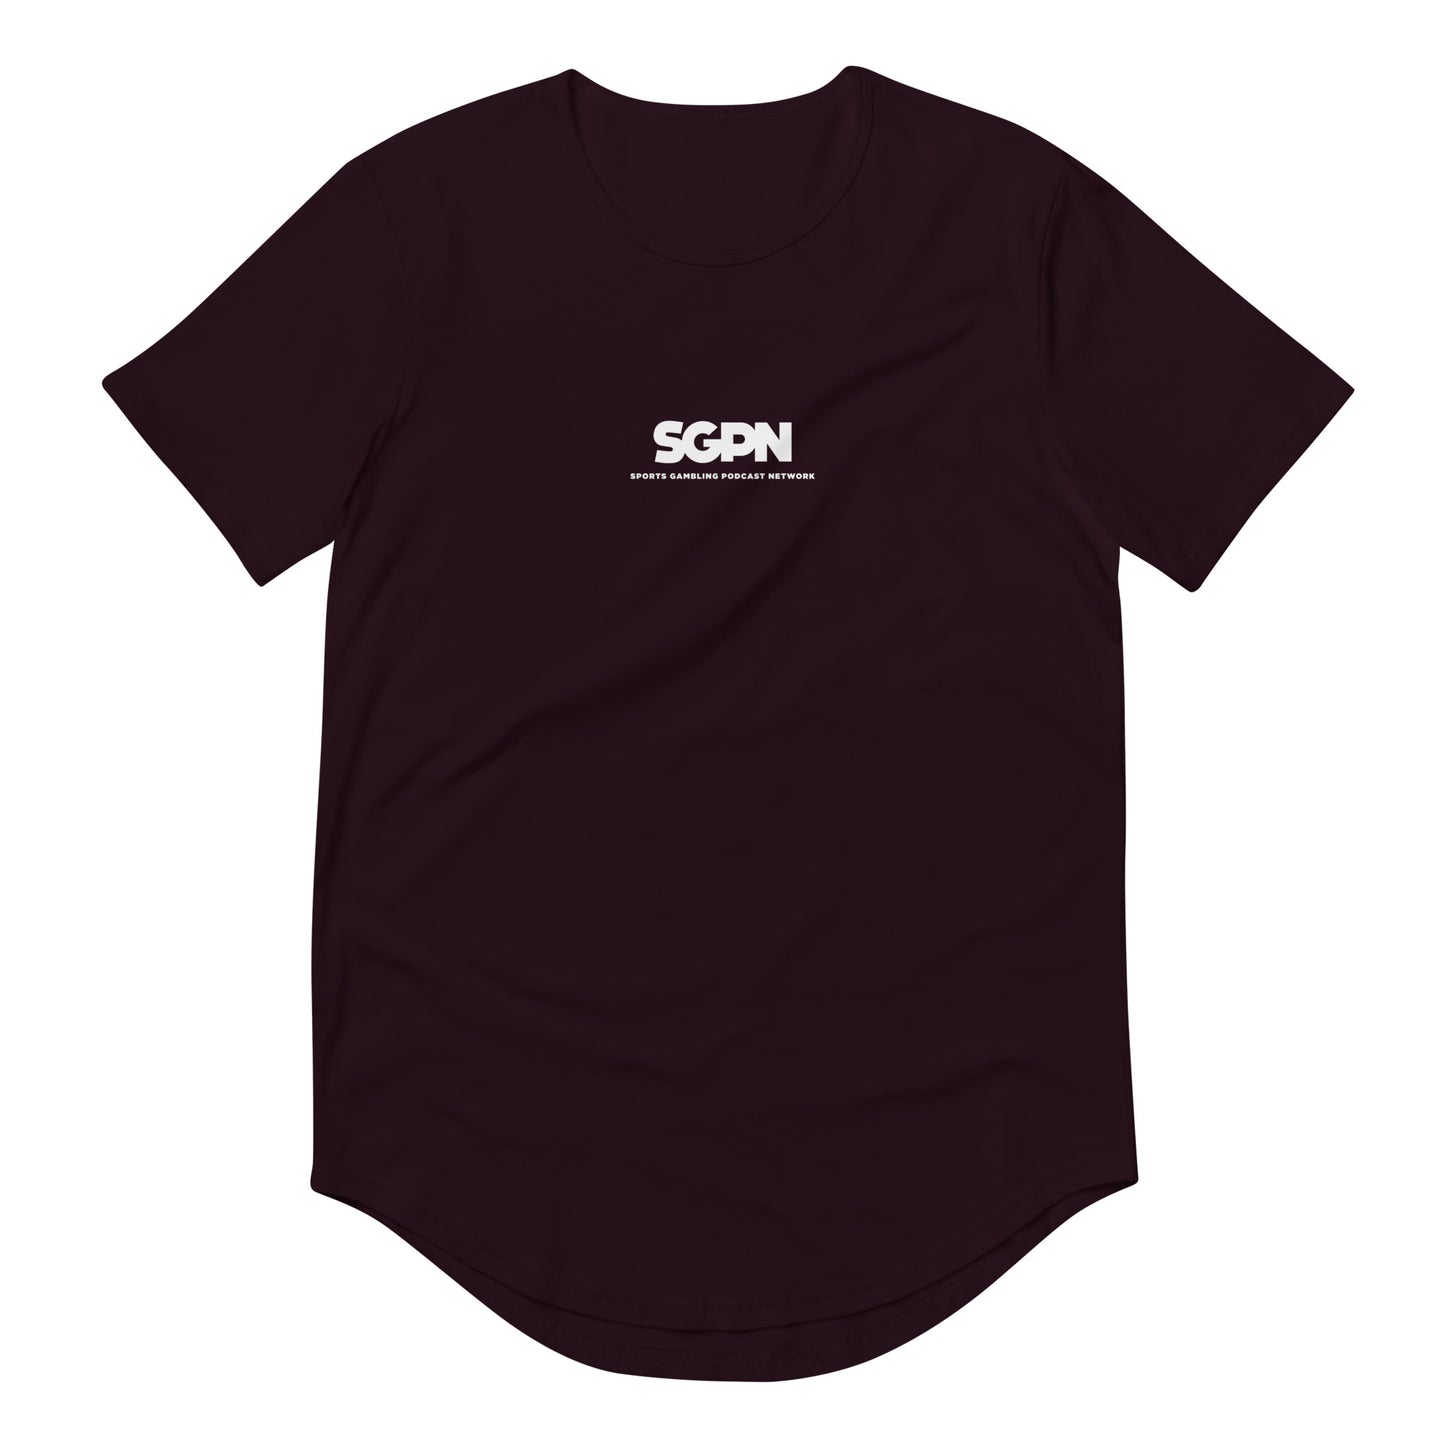 SGPN - Men's Curved Hem T-Shirt (White Logo)